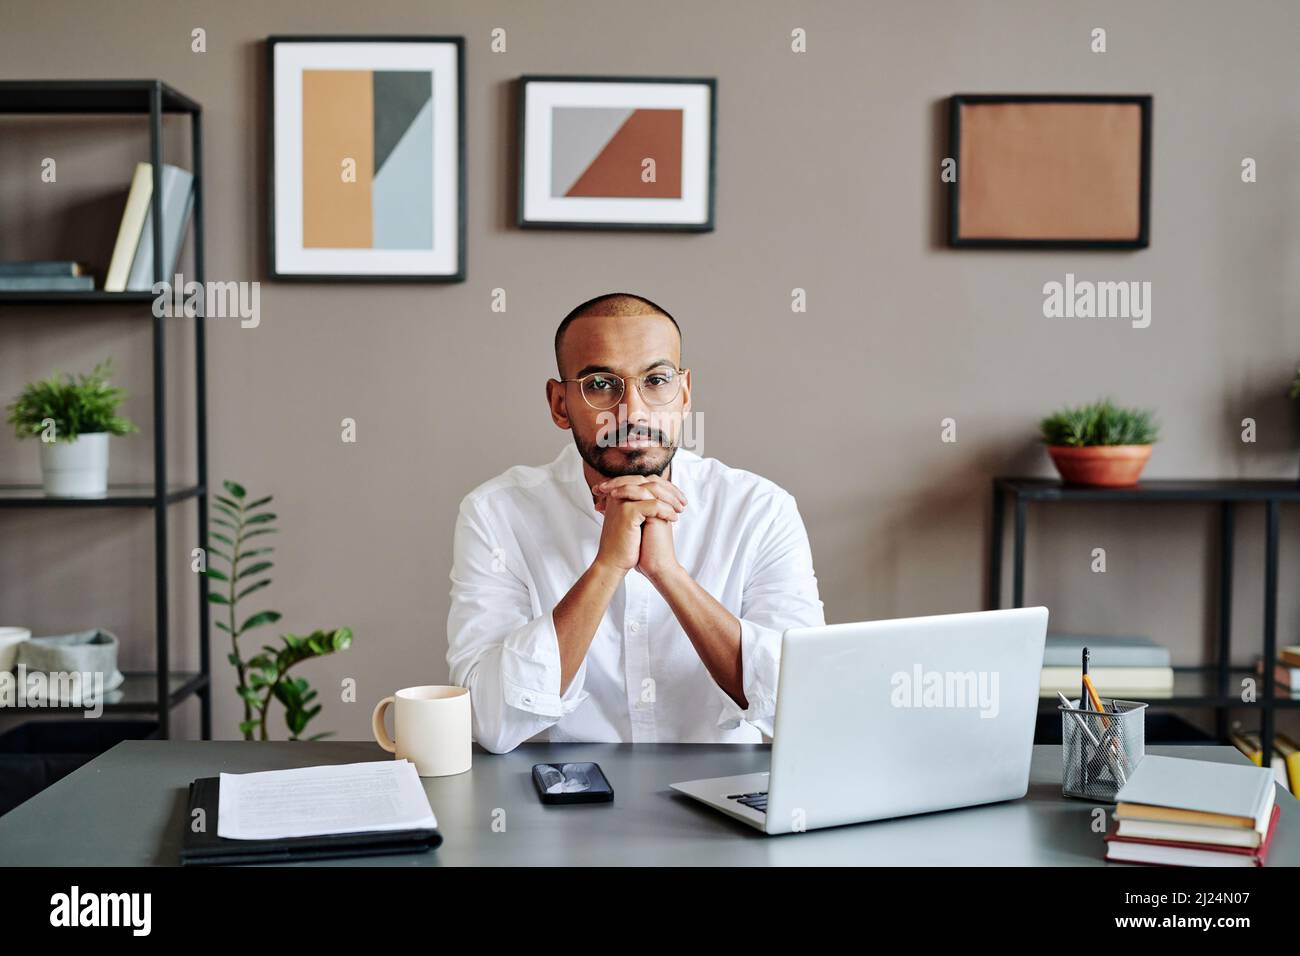 Jeune homme d'affaires musulman sérieux en chemise blanche, assis sur le lieu de travail devant un ordinateur portable et regardant un appareil photo pendant une réunion numérique Banque D'Images